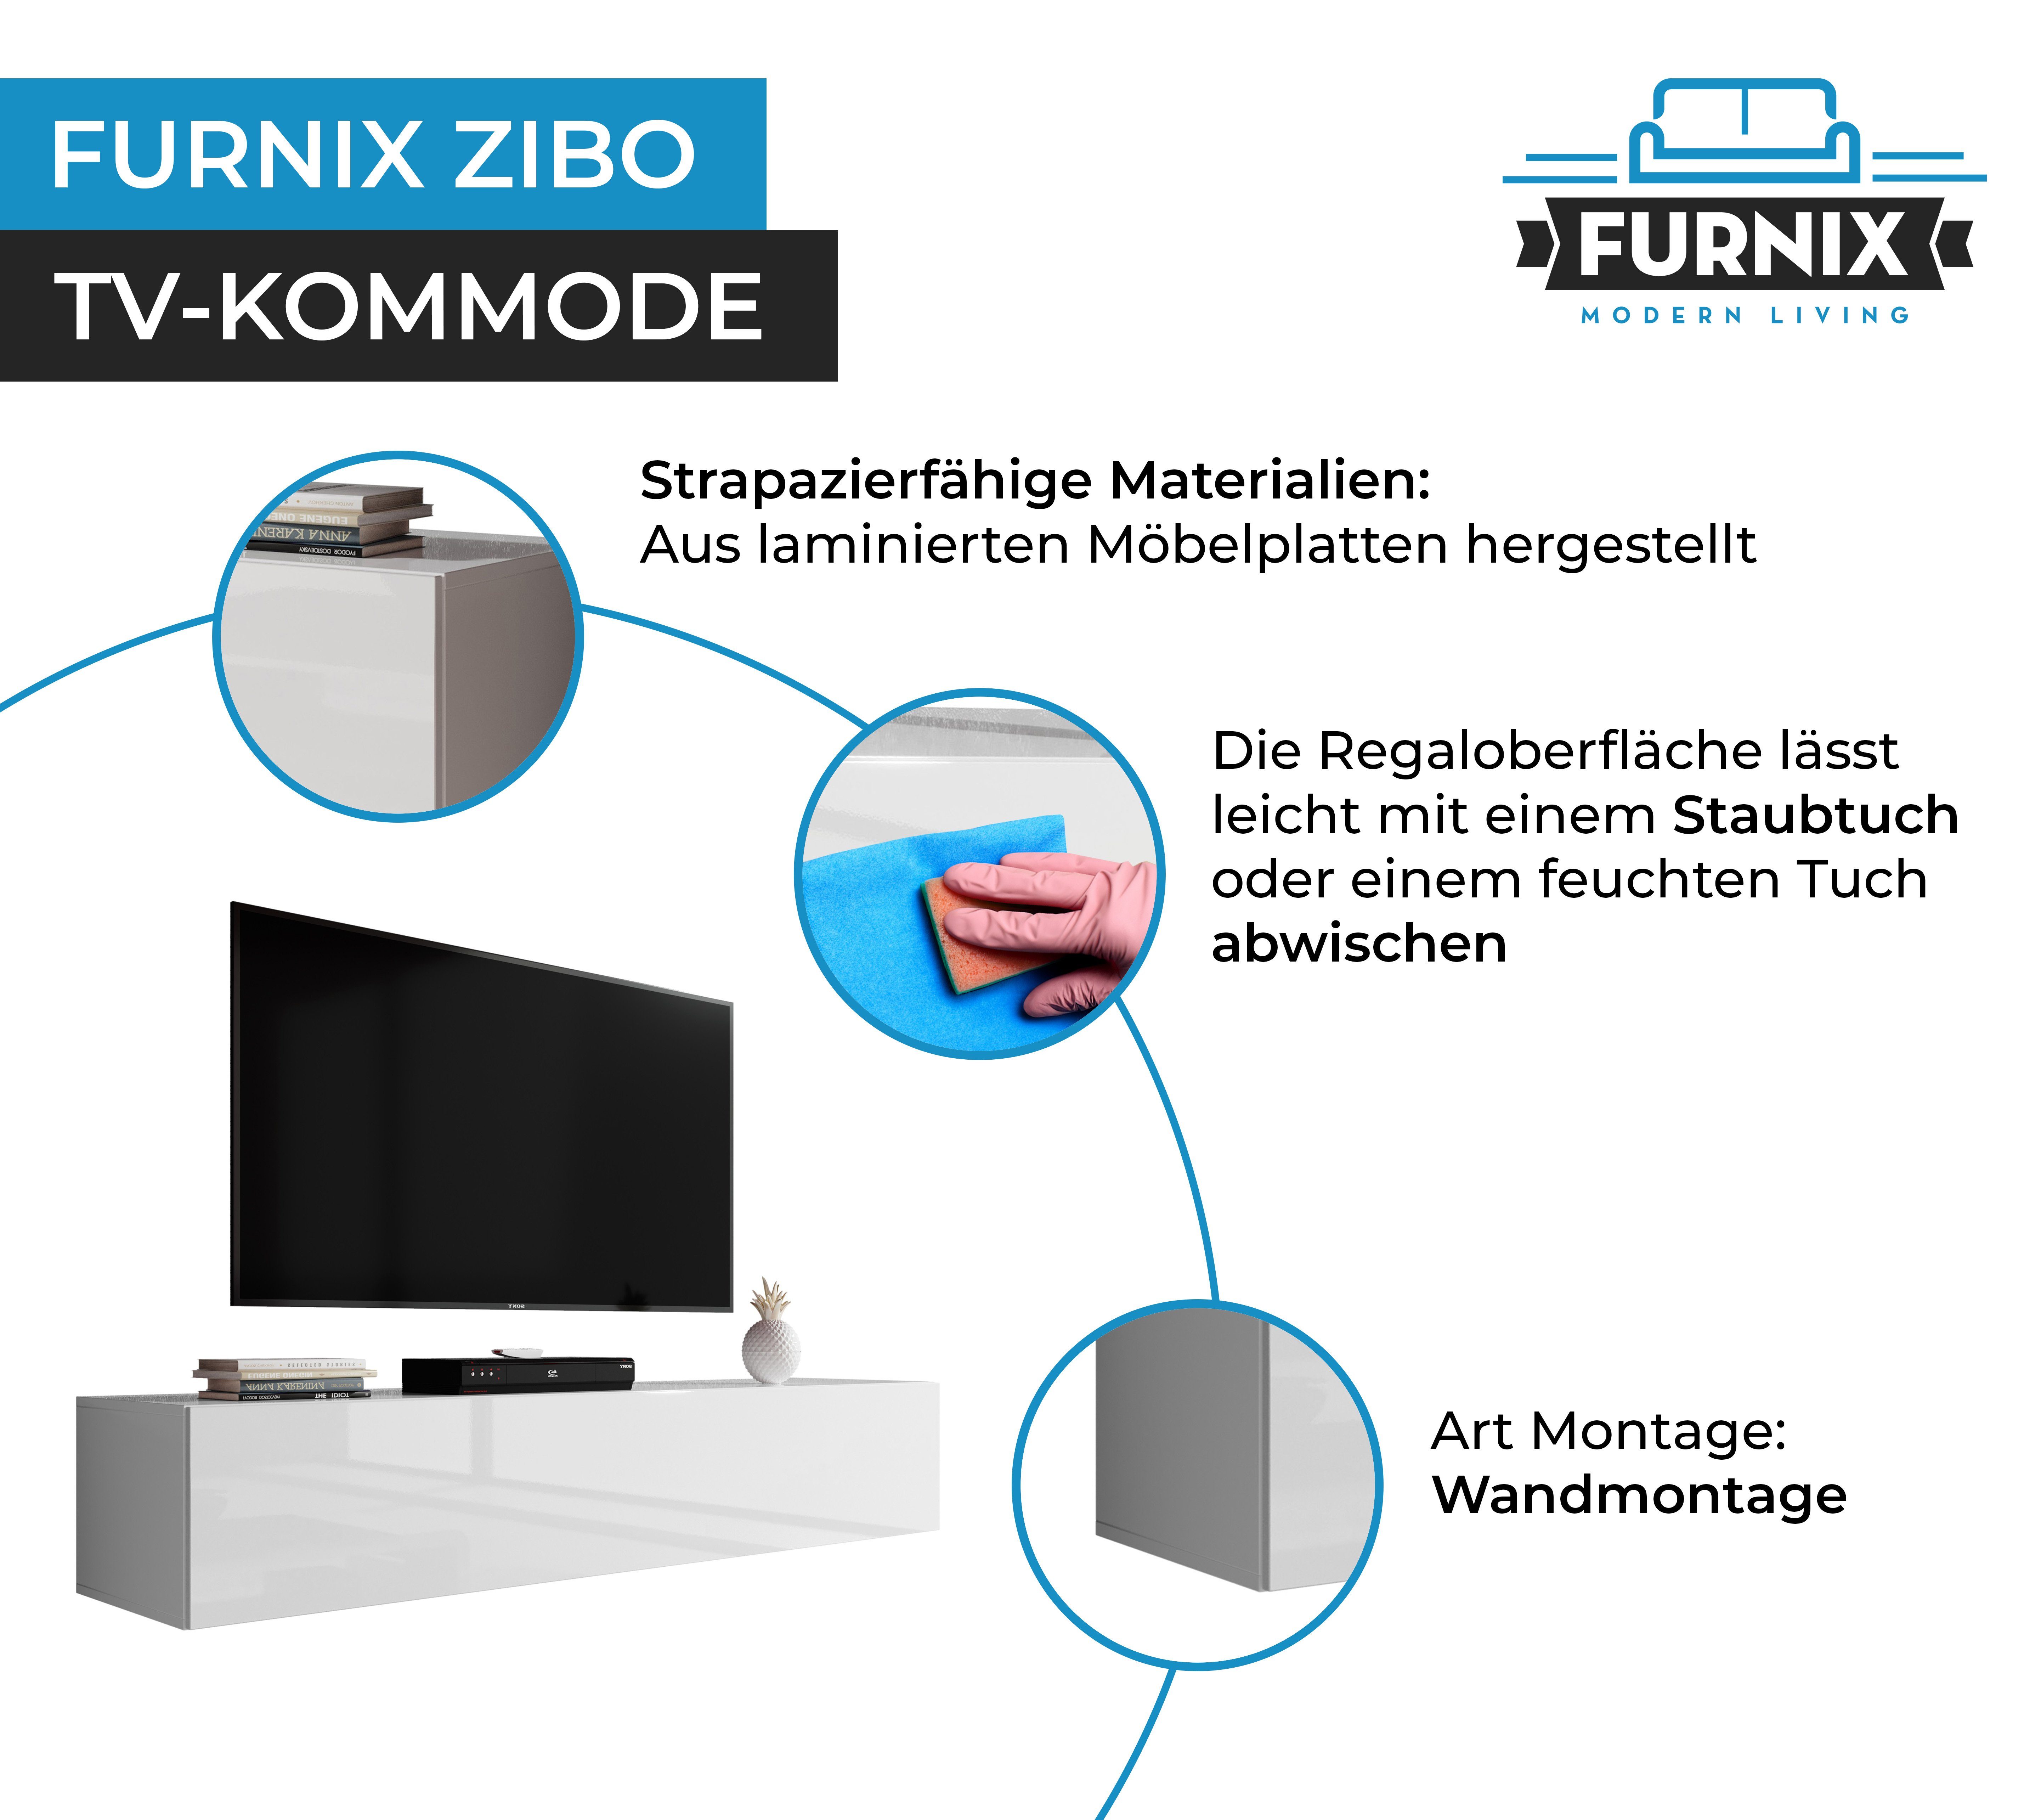 Hängeboard 160 cm, Lowboard Tiefe ZIBO 34 40 Furnix cm Weiß-Hochglanz TV-Schrank TV-Board modern, Breite Höhe cm,